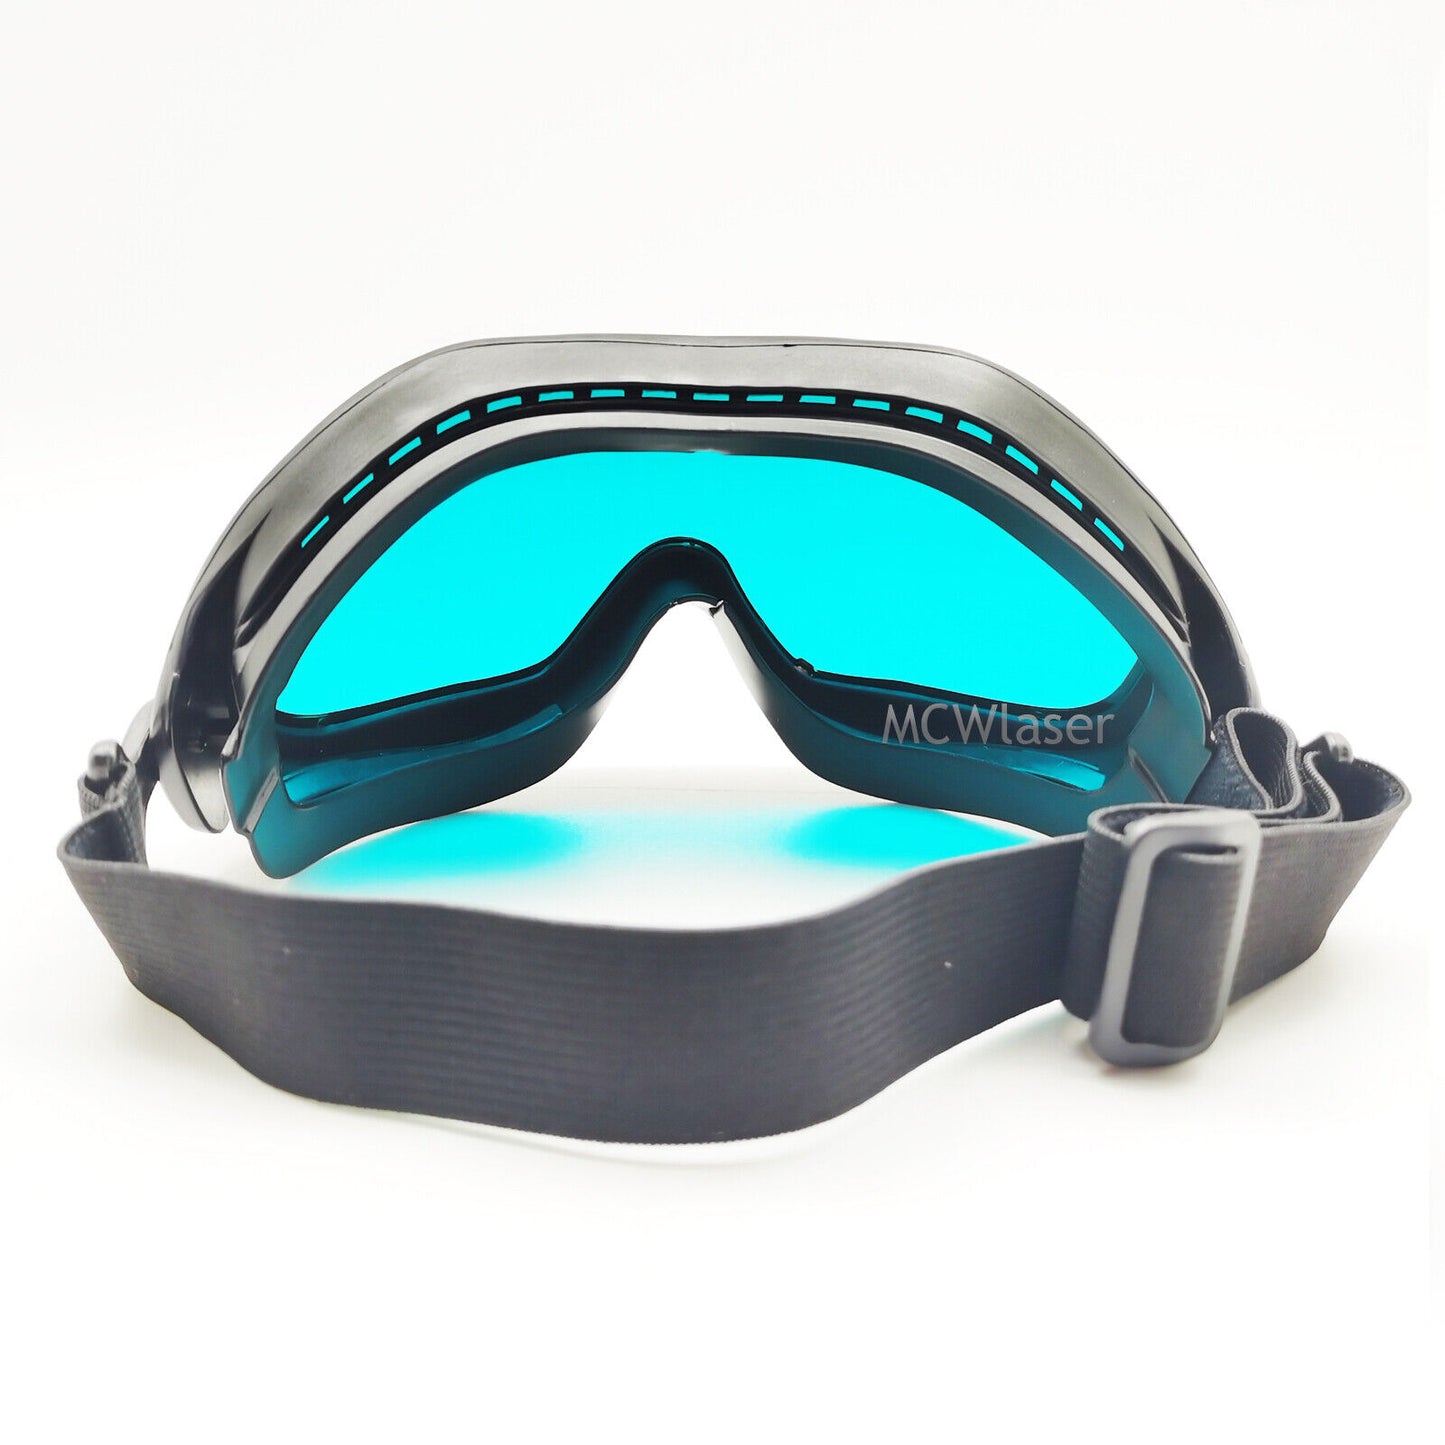 CO2-Laserbrille für 10600-nm-Laserschutz-Schutzbrillen